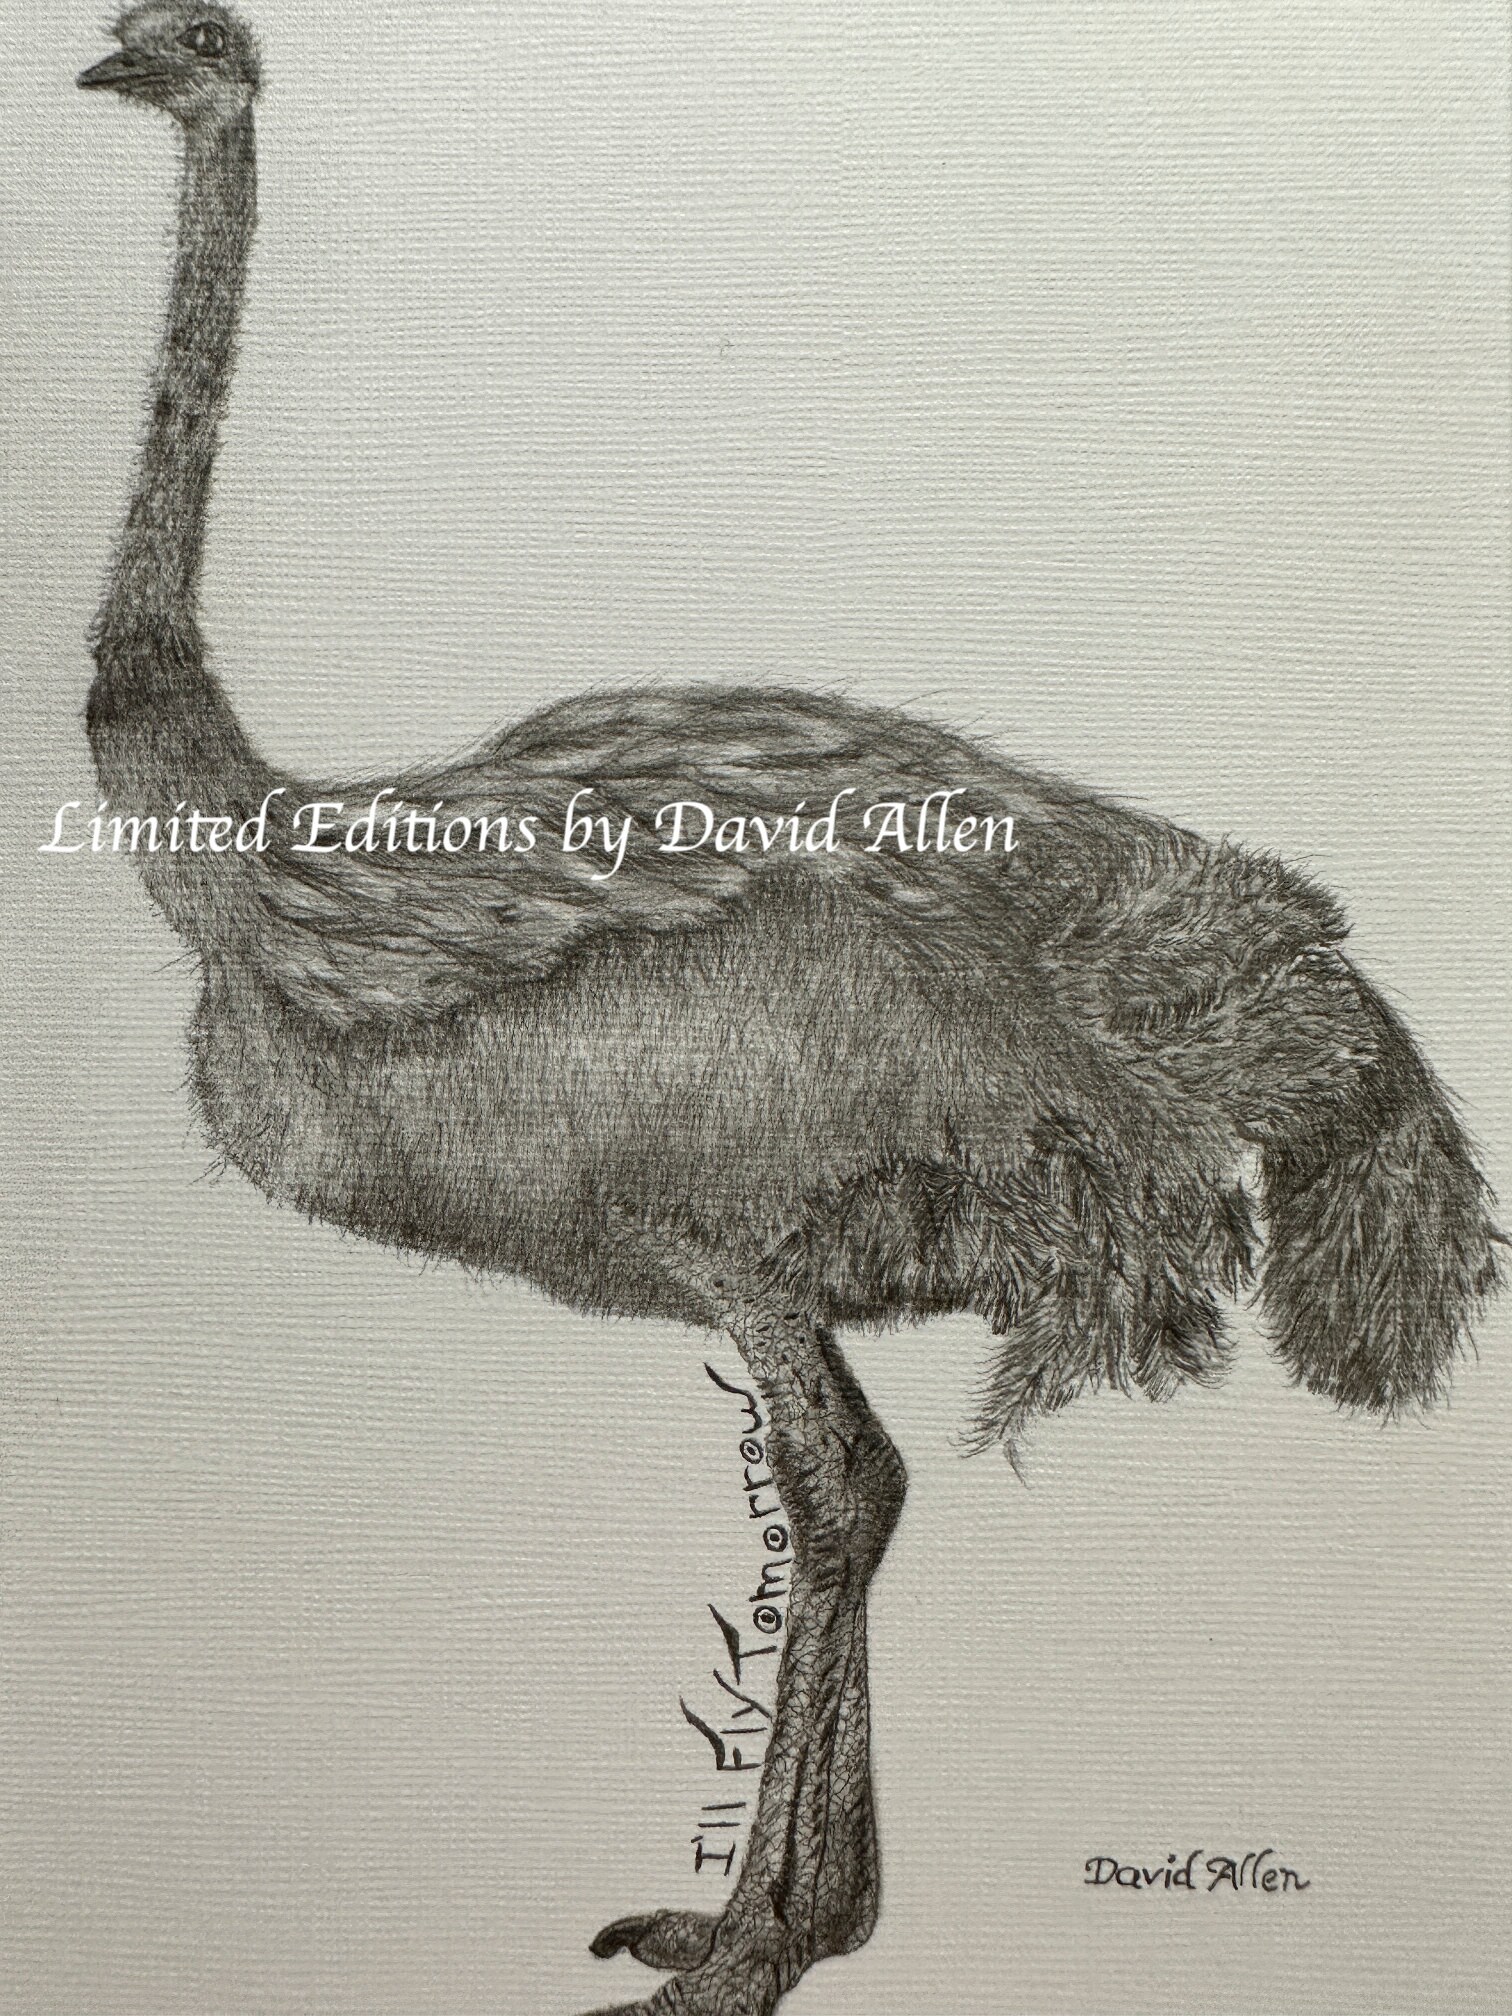 Ostrich Bird Africa Nature Wildlife Graphite Pencil Art Sketch 